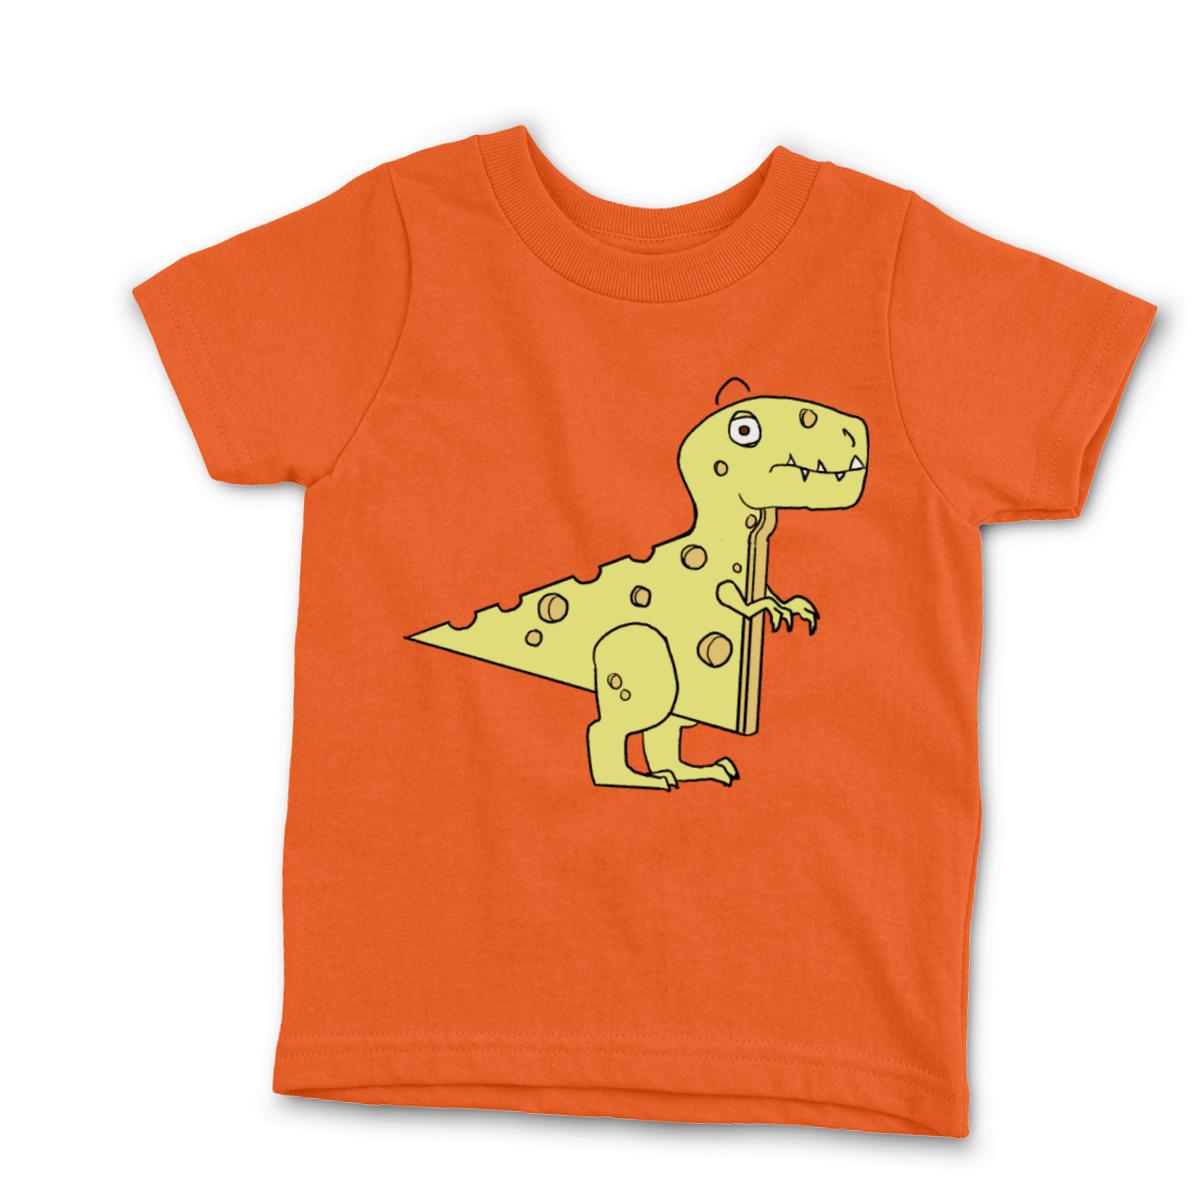 Cheeseosaurus Rex Kid's Tee Medium orange